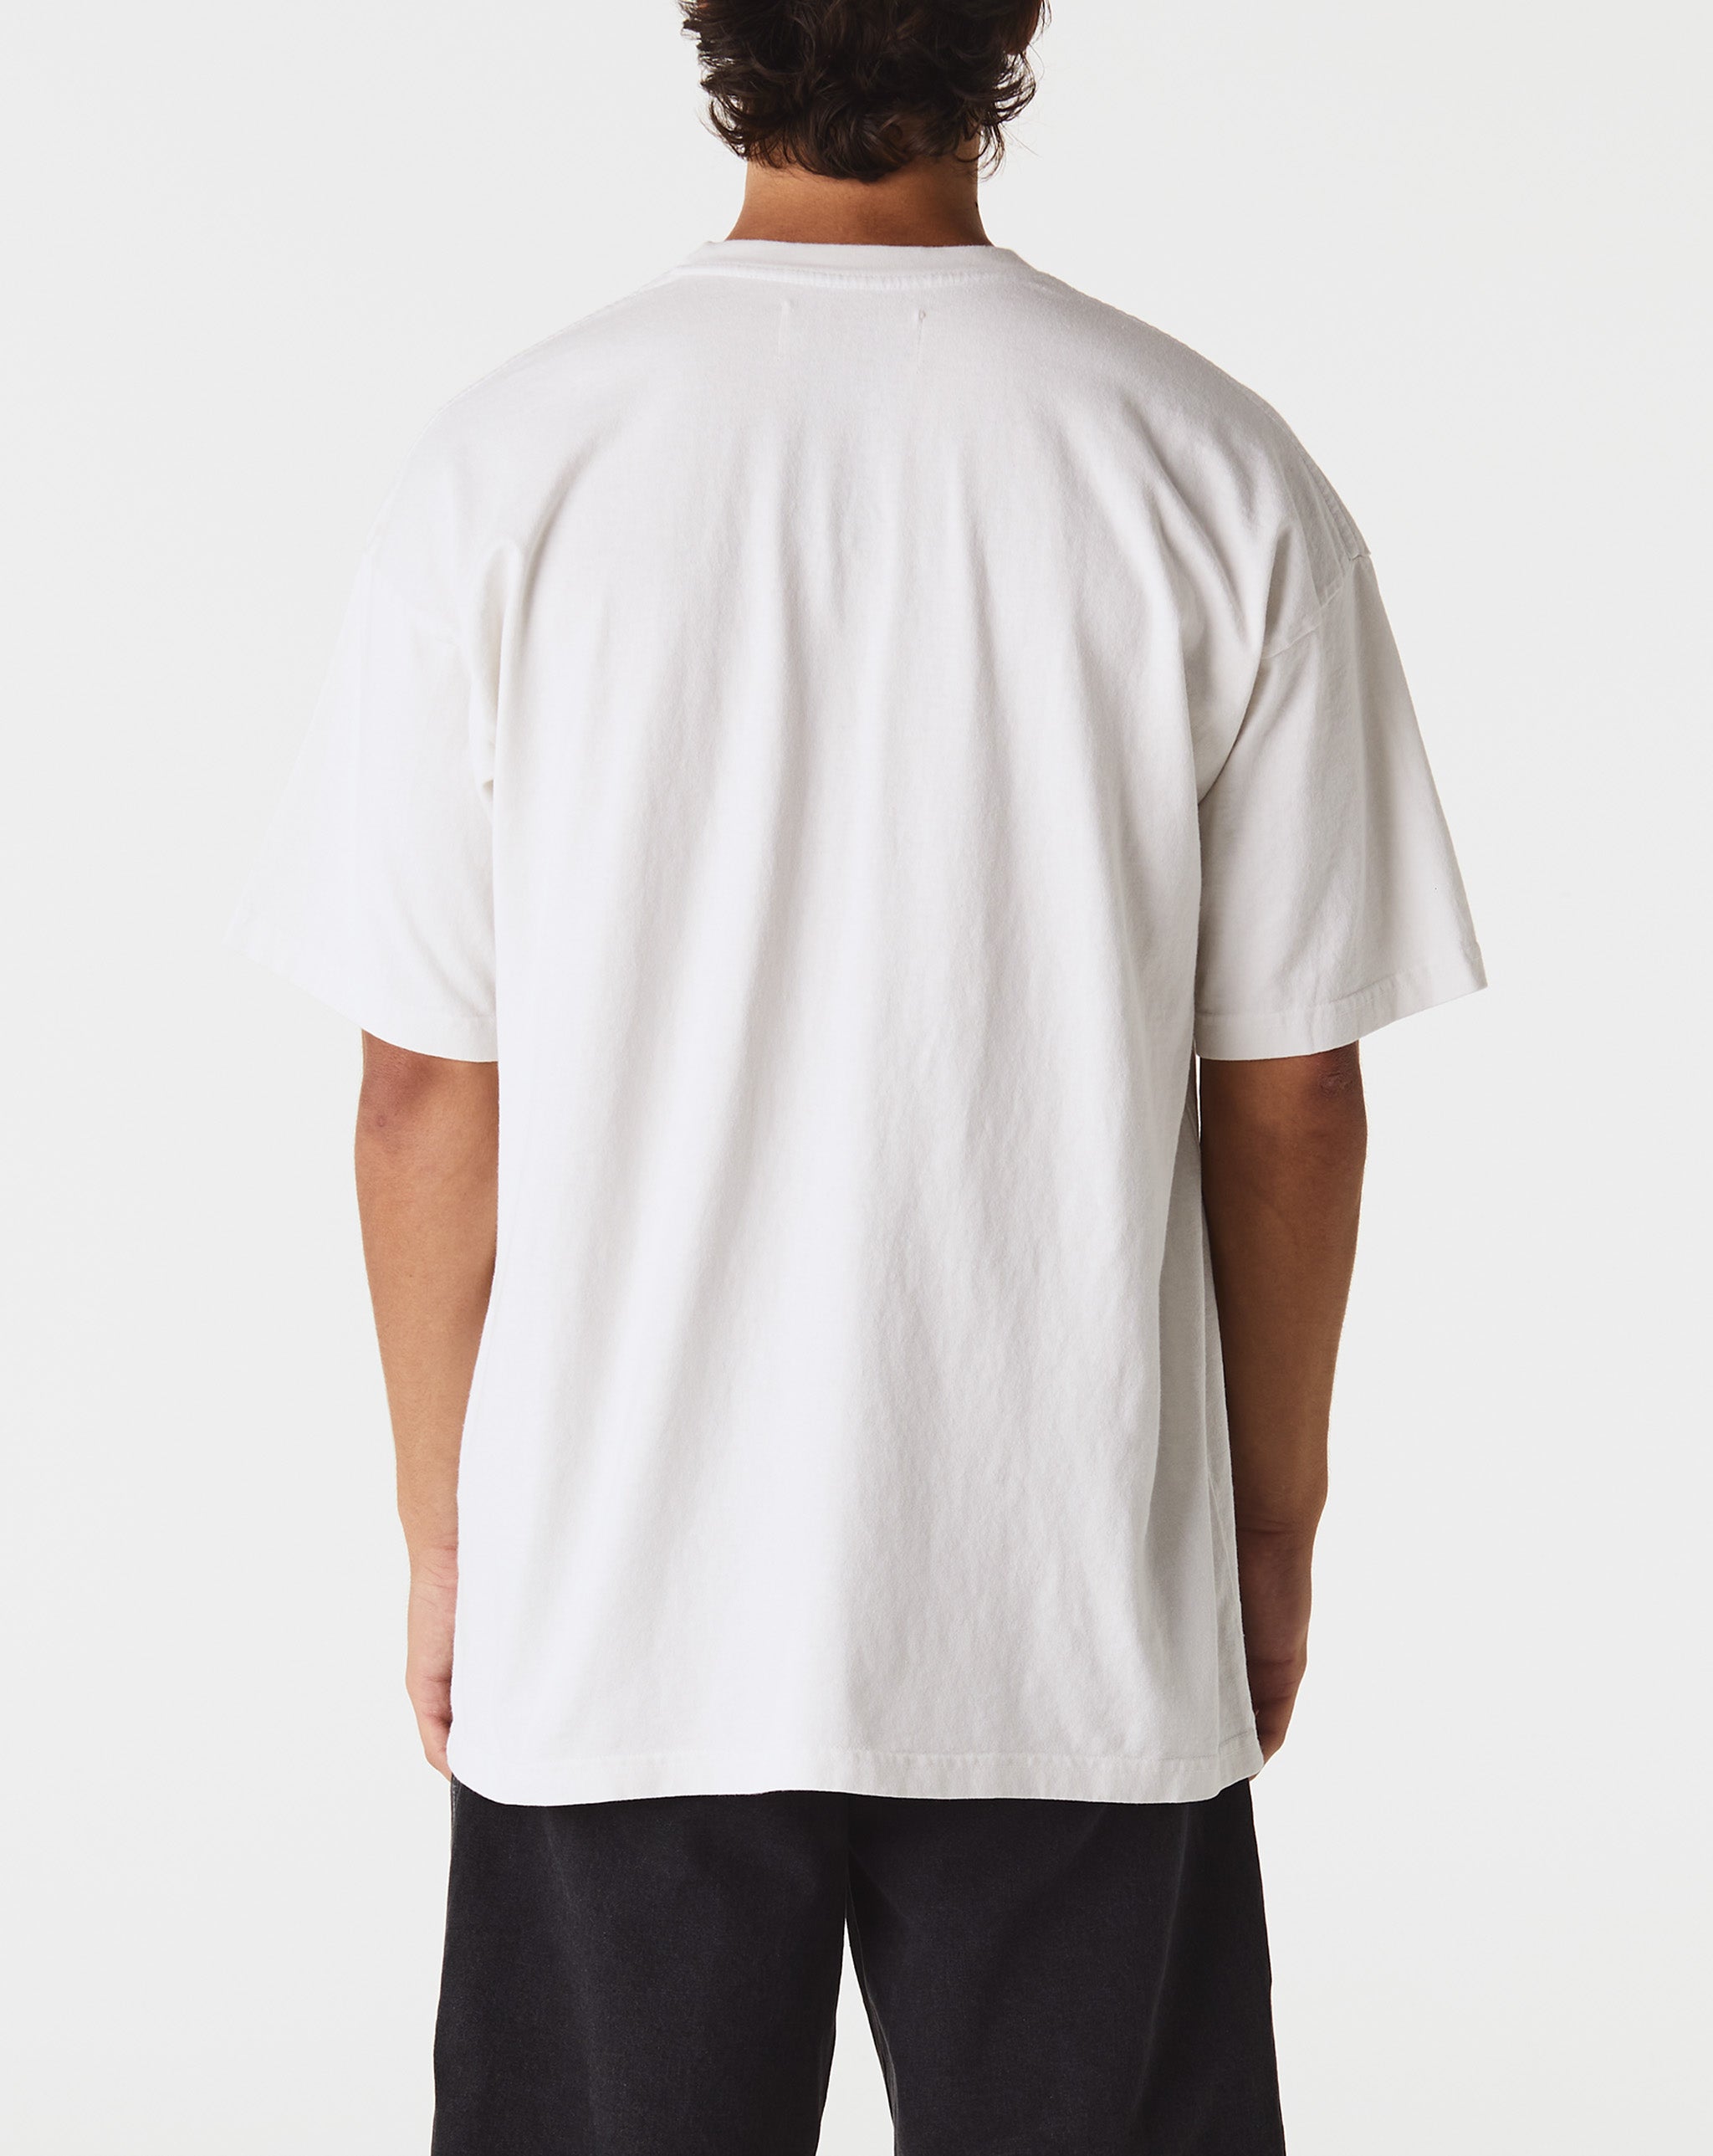 Satoshi Nakamoto Painer Shirt Jacket  - Cheap Urlfreeze Jordan outlet